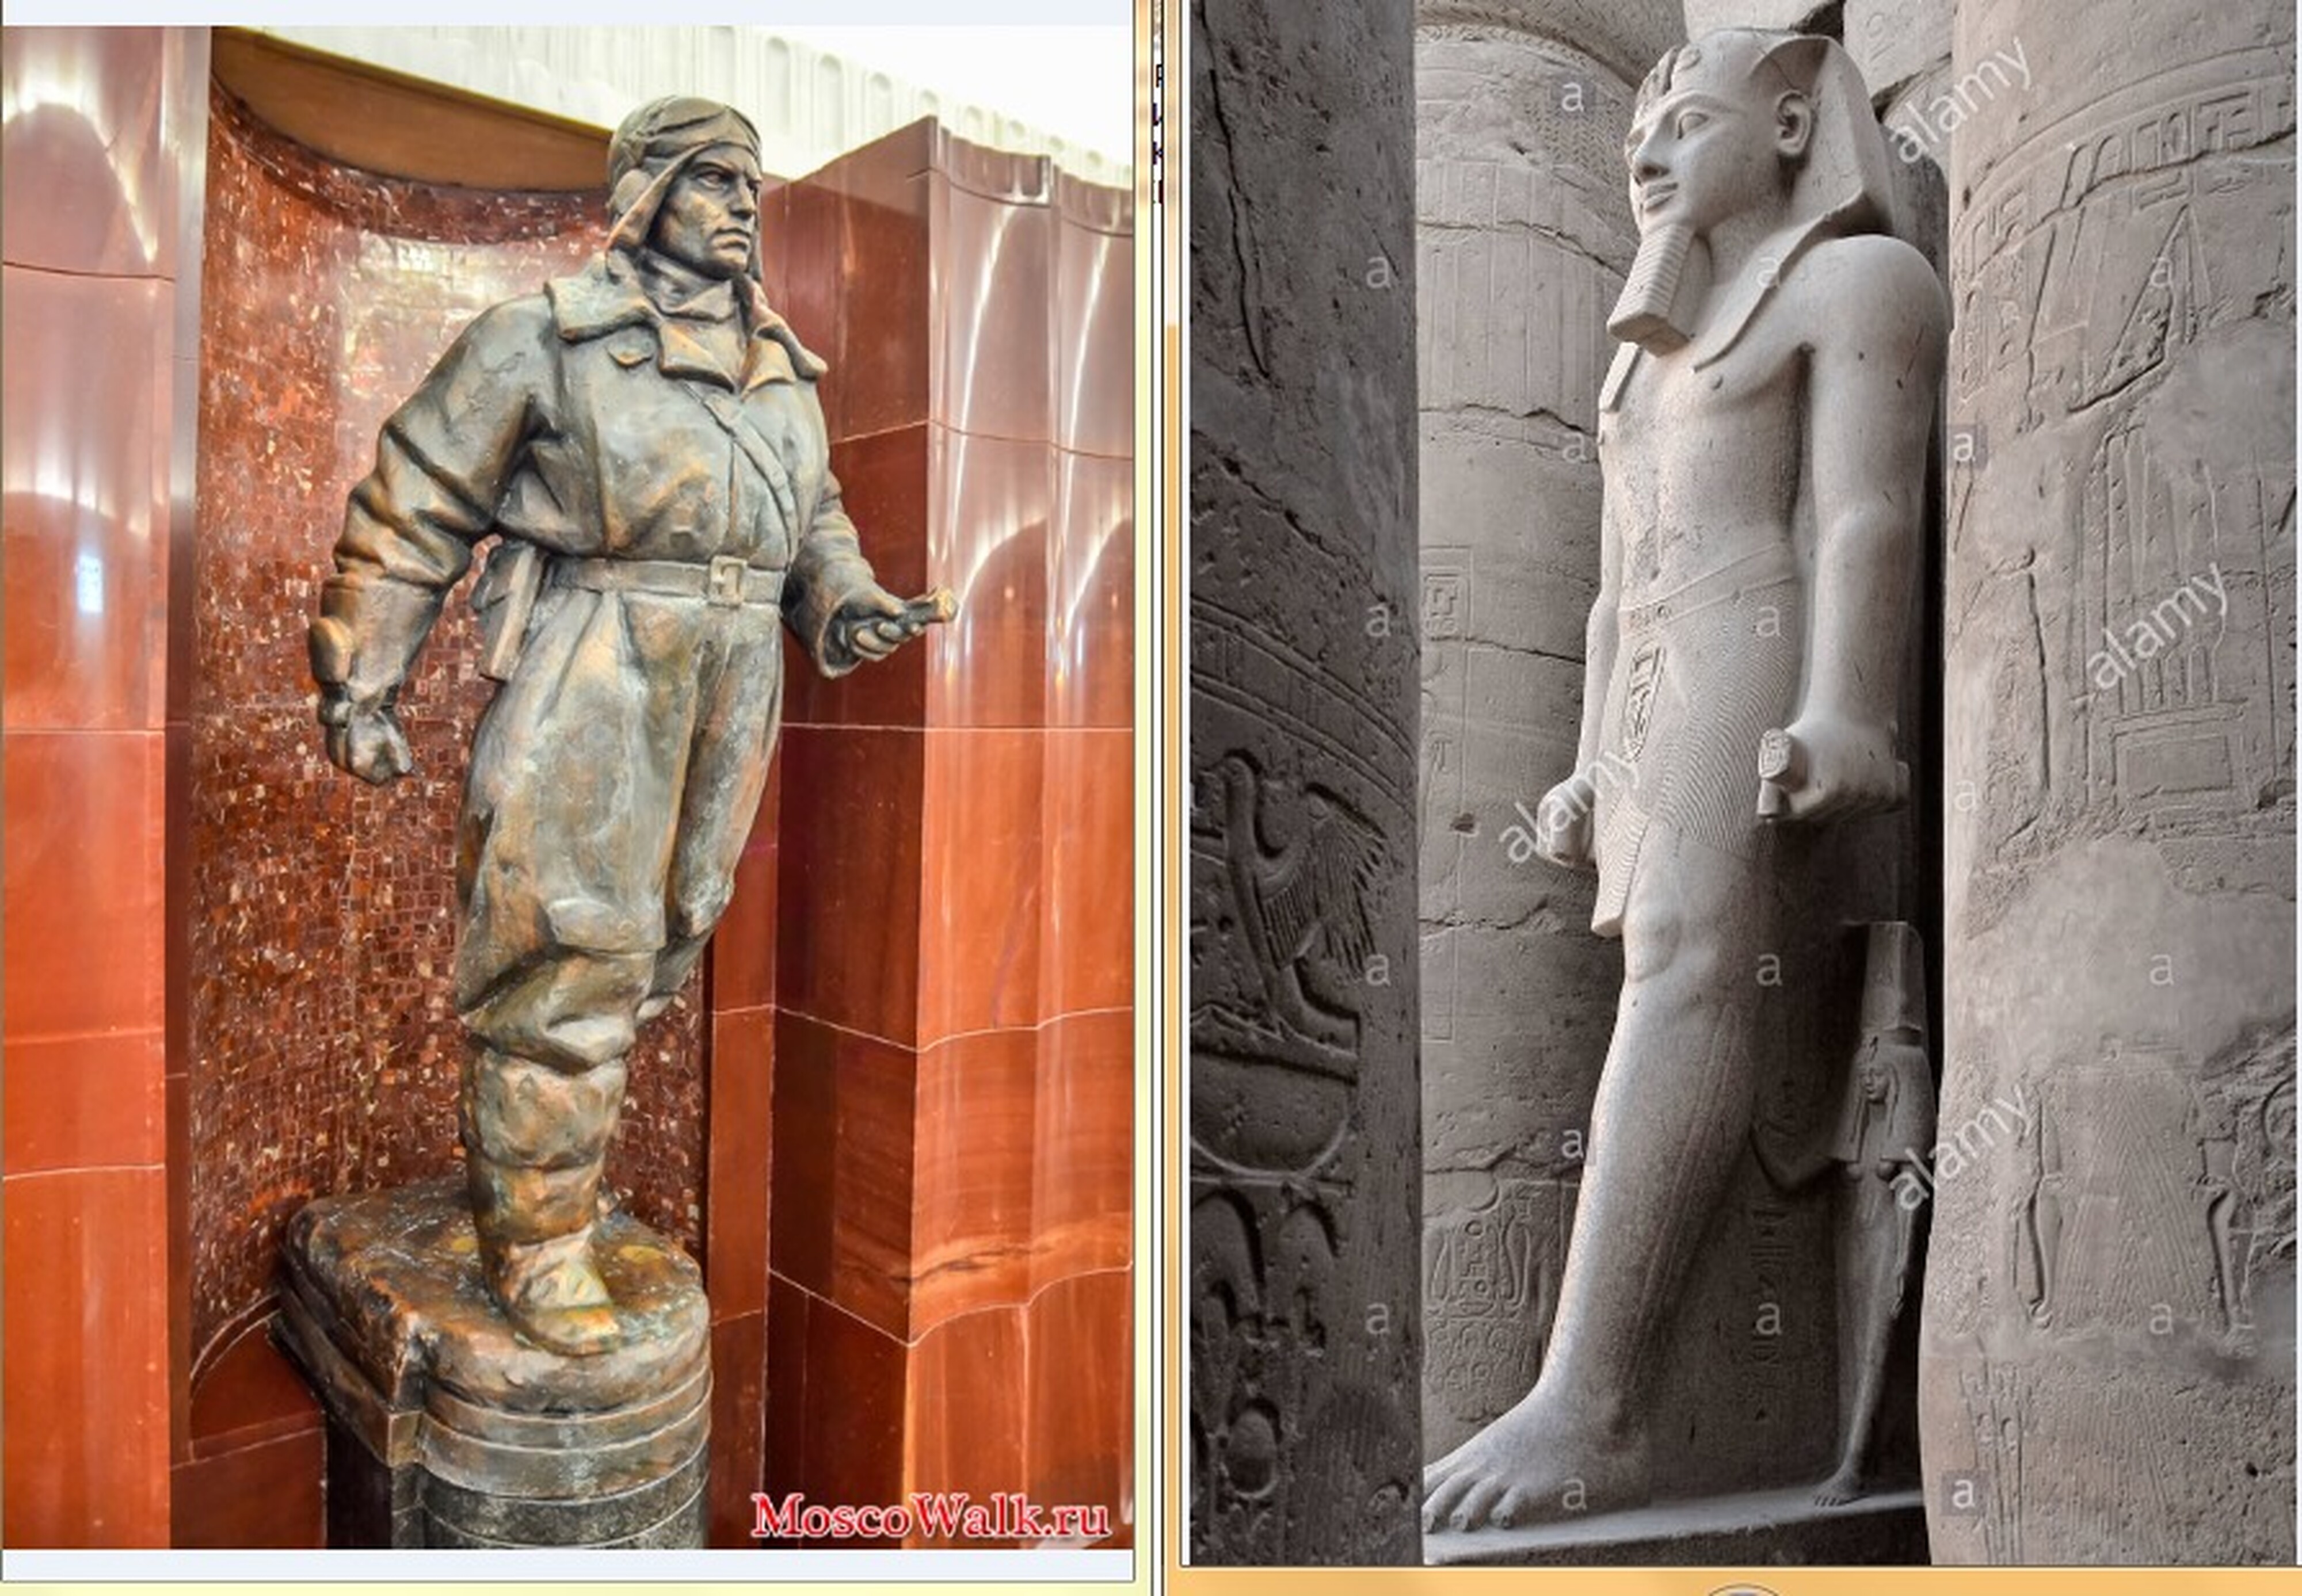 Скульптуры, украшающие слева - станцию Бауманская, справа - древнеегипетский храм. Обратите внимание, что и там, и там четко обозначены атрибуты профессии. У обеих скульптур в руке зажато нечто непонятное, но очень похожее.